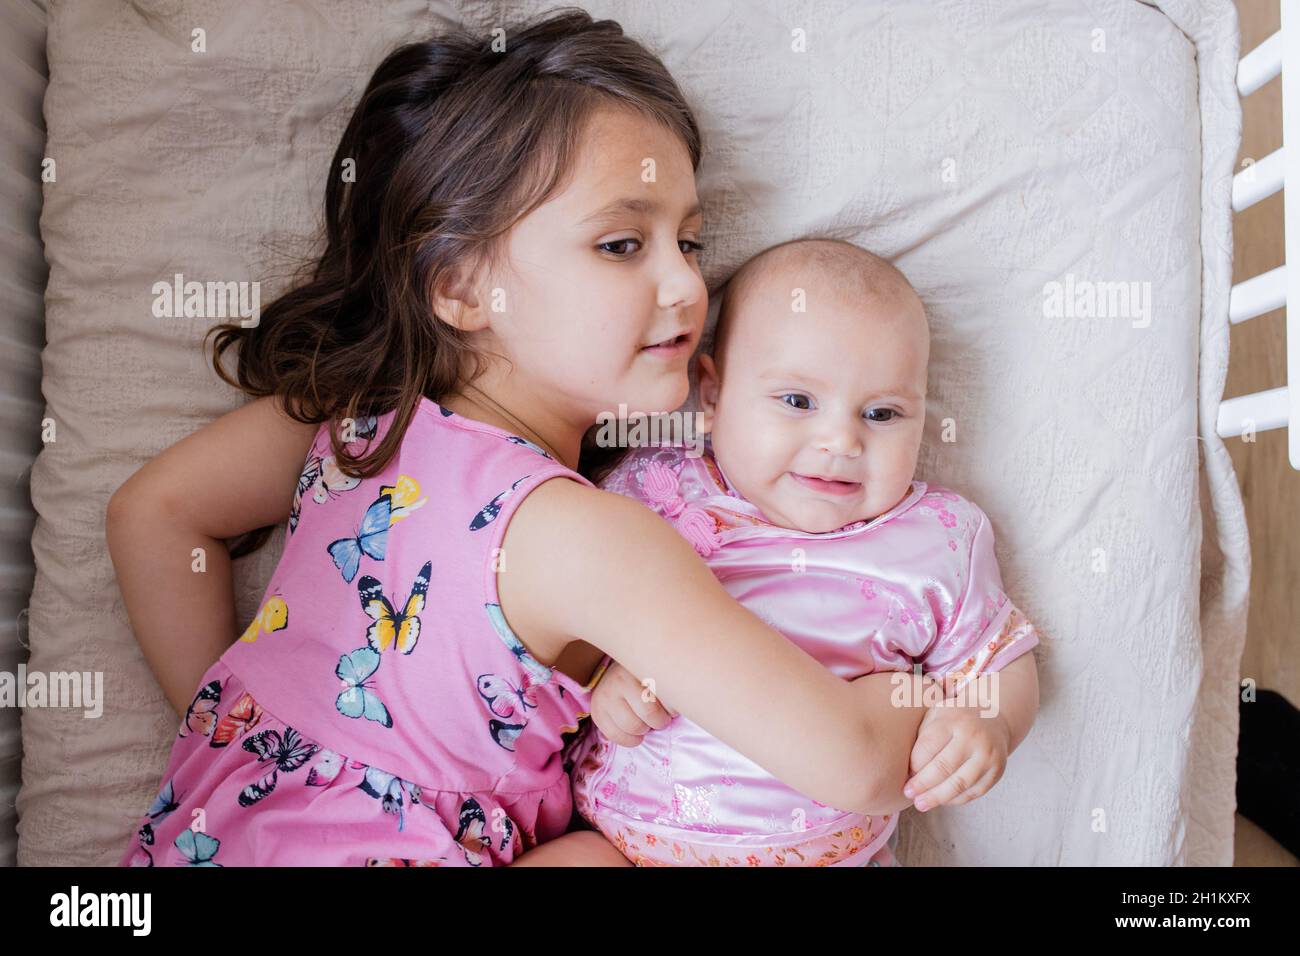 Glückliches kleines Mädchen liebevoll umarmt Baby Schwester in rosa  asiatische Kleidung auf einem Bett. Zwei liebliche Geschwister in rosa  Mäntel liegen auf dem Bett. Junge Geschwister ha Stockfotografie - Alamy